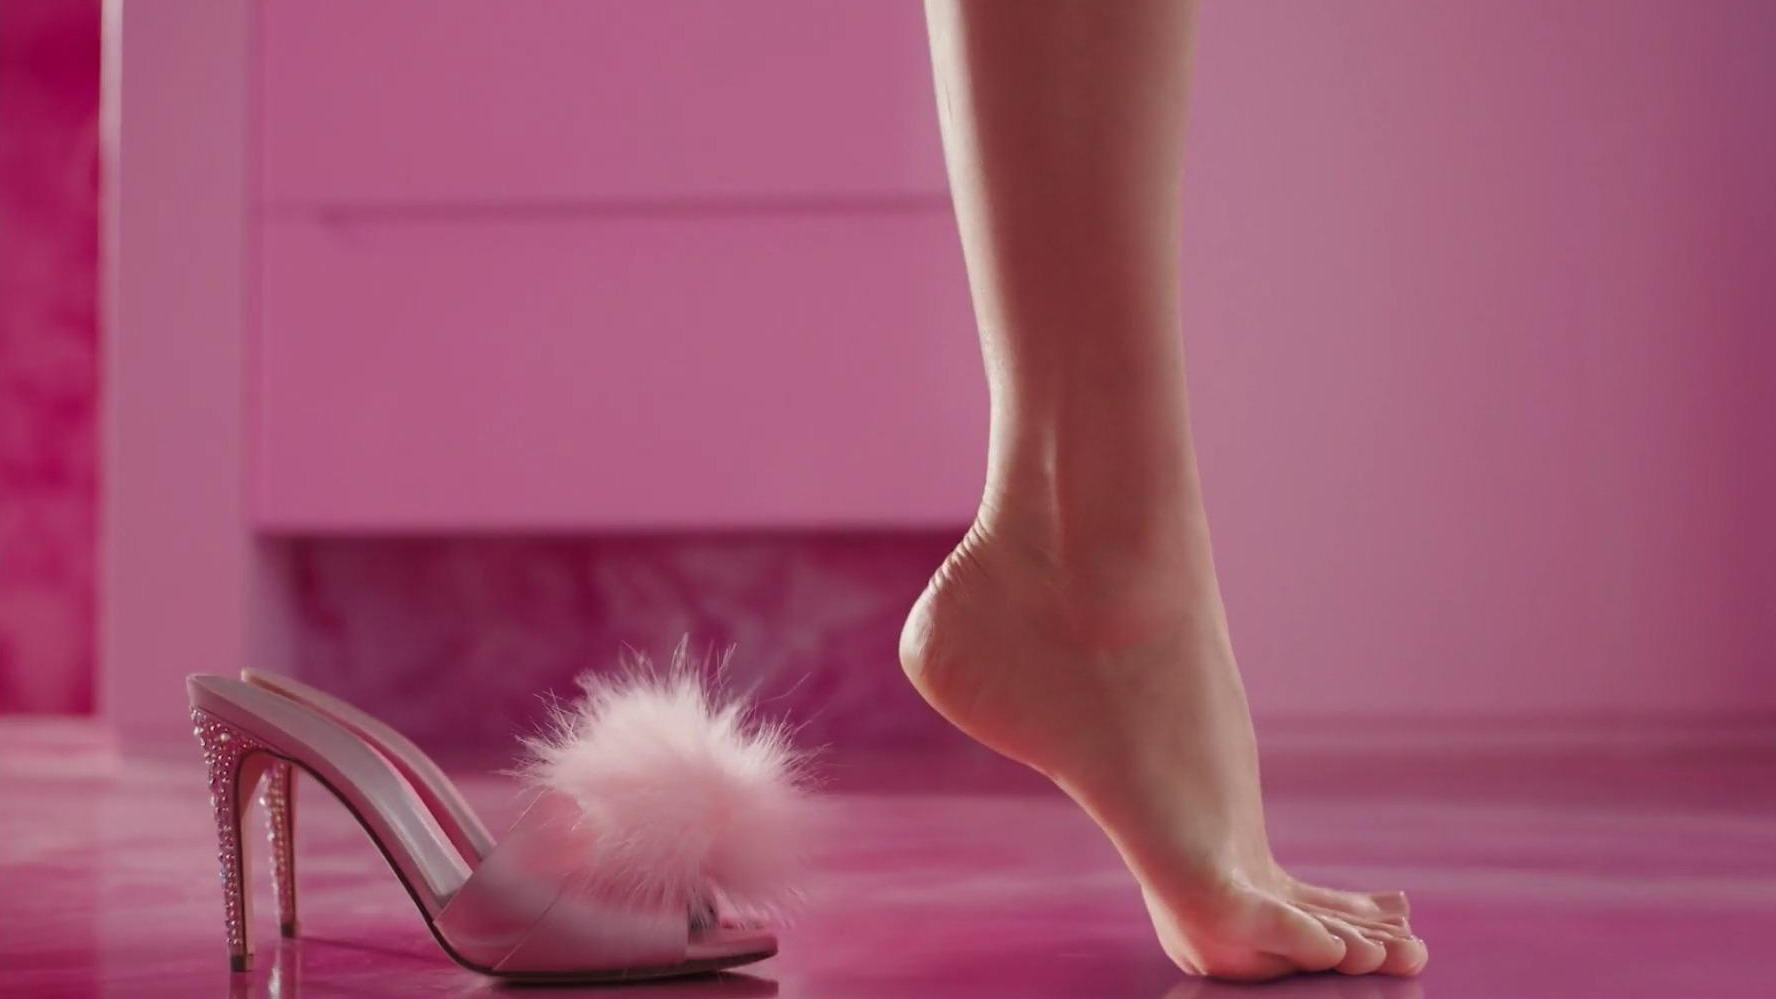 Expertin: Darum ist Vorsicht geboten! "Barbie Feet Challenge"